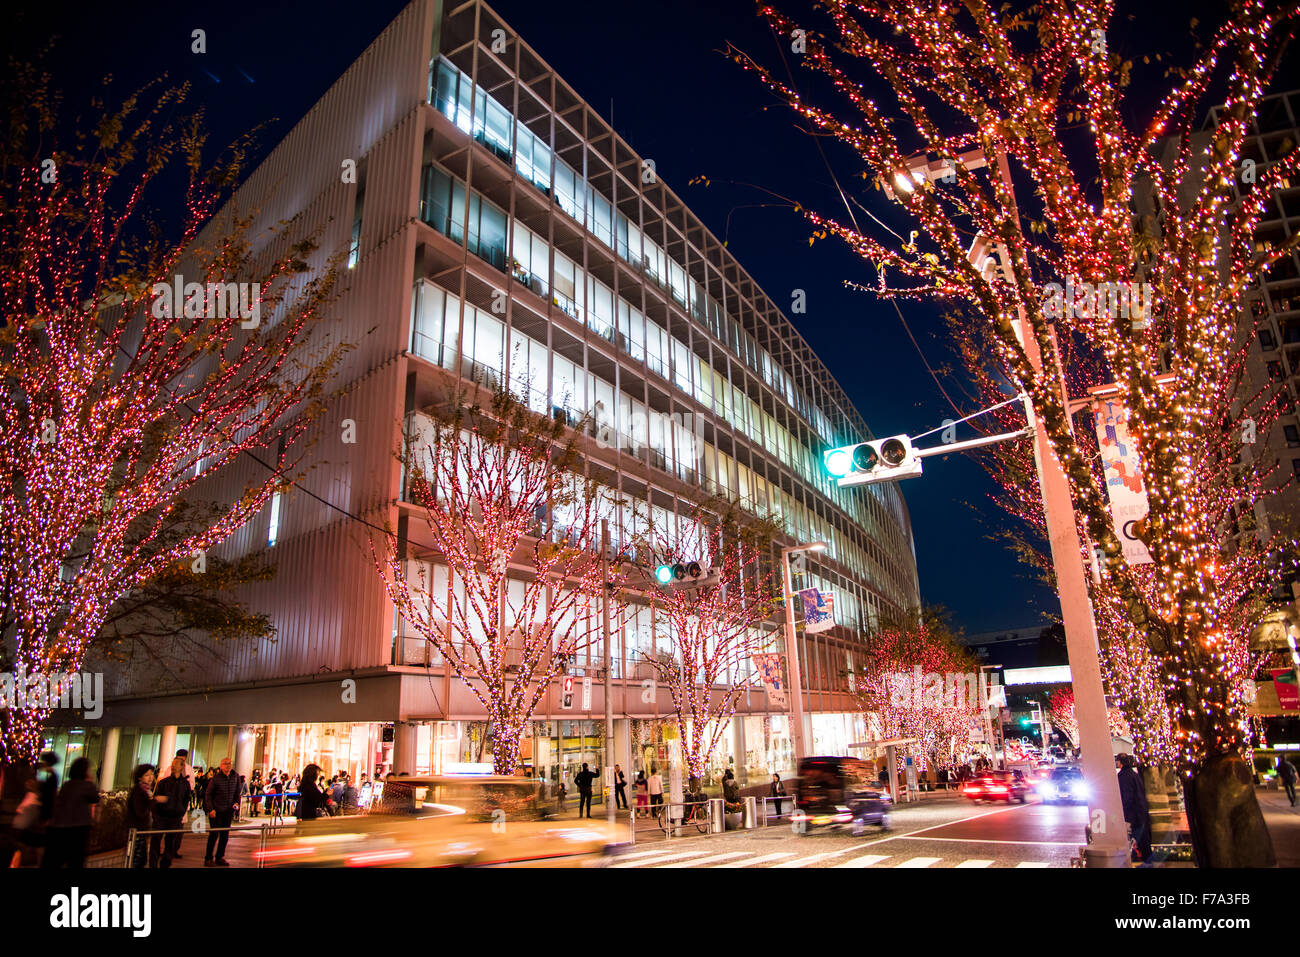 Illumination,Keyakizaka-dori street,Roppongi Hills,Minato-Ku,Tokyo,Japan Stock Photo